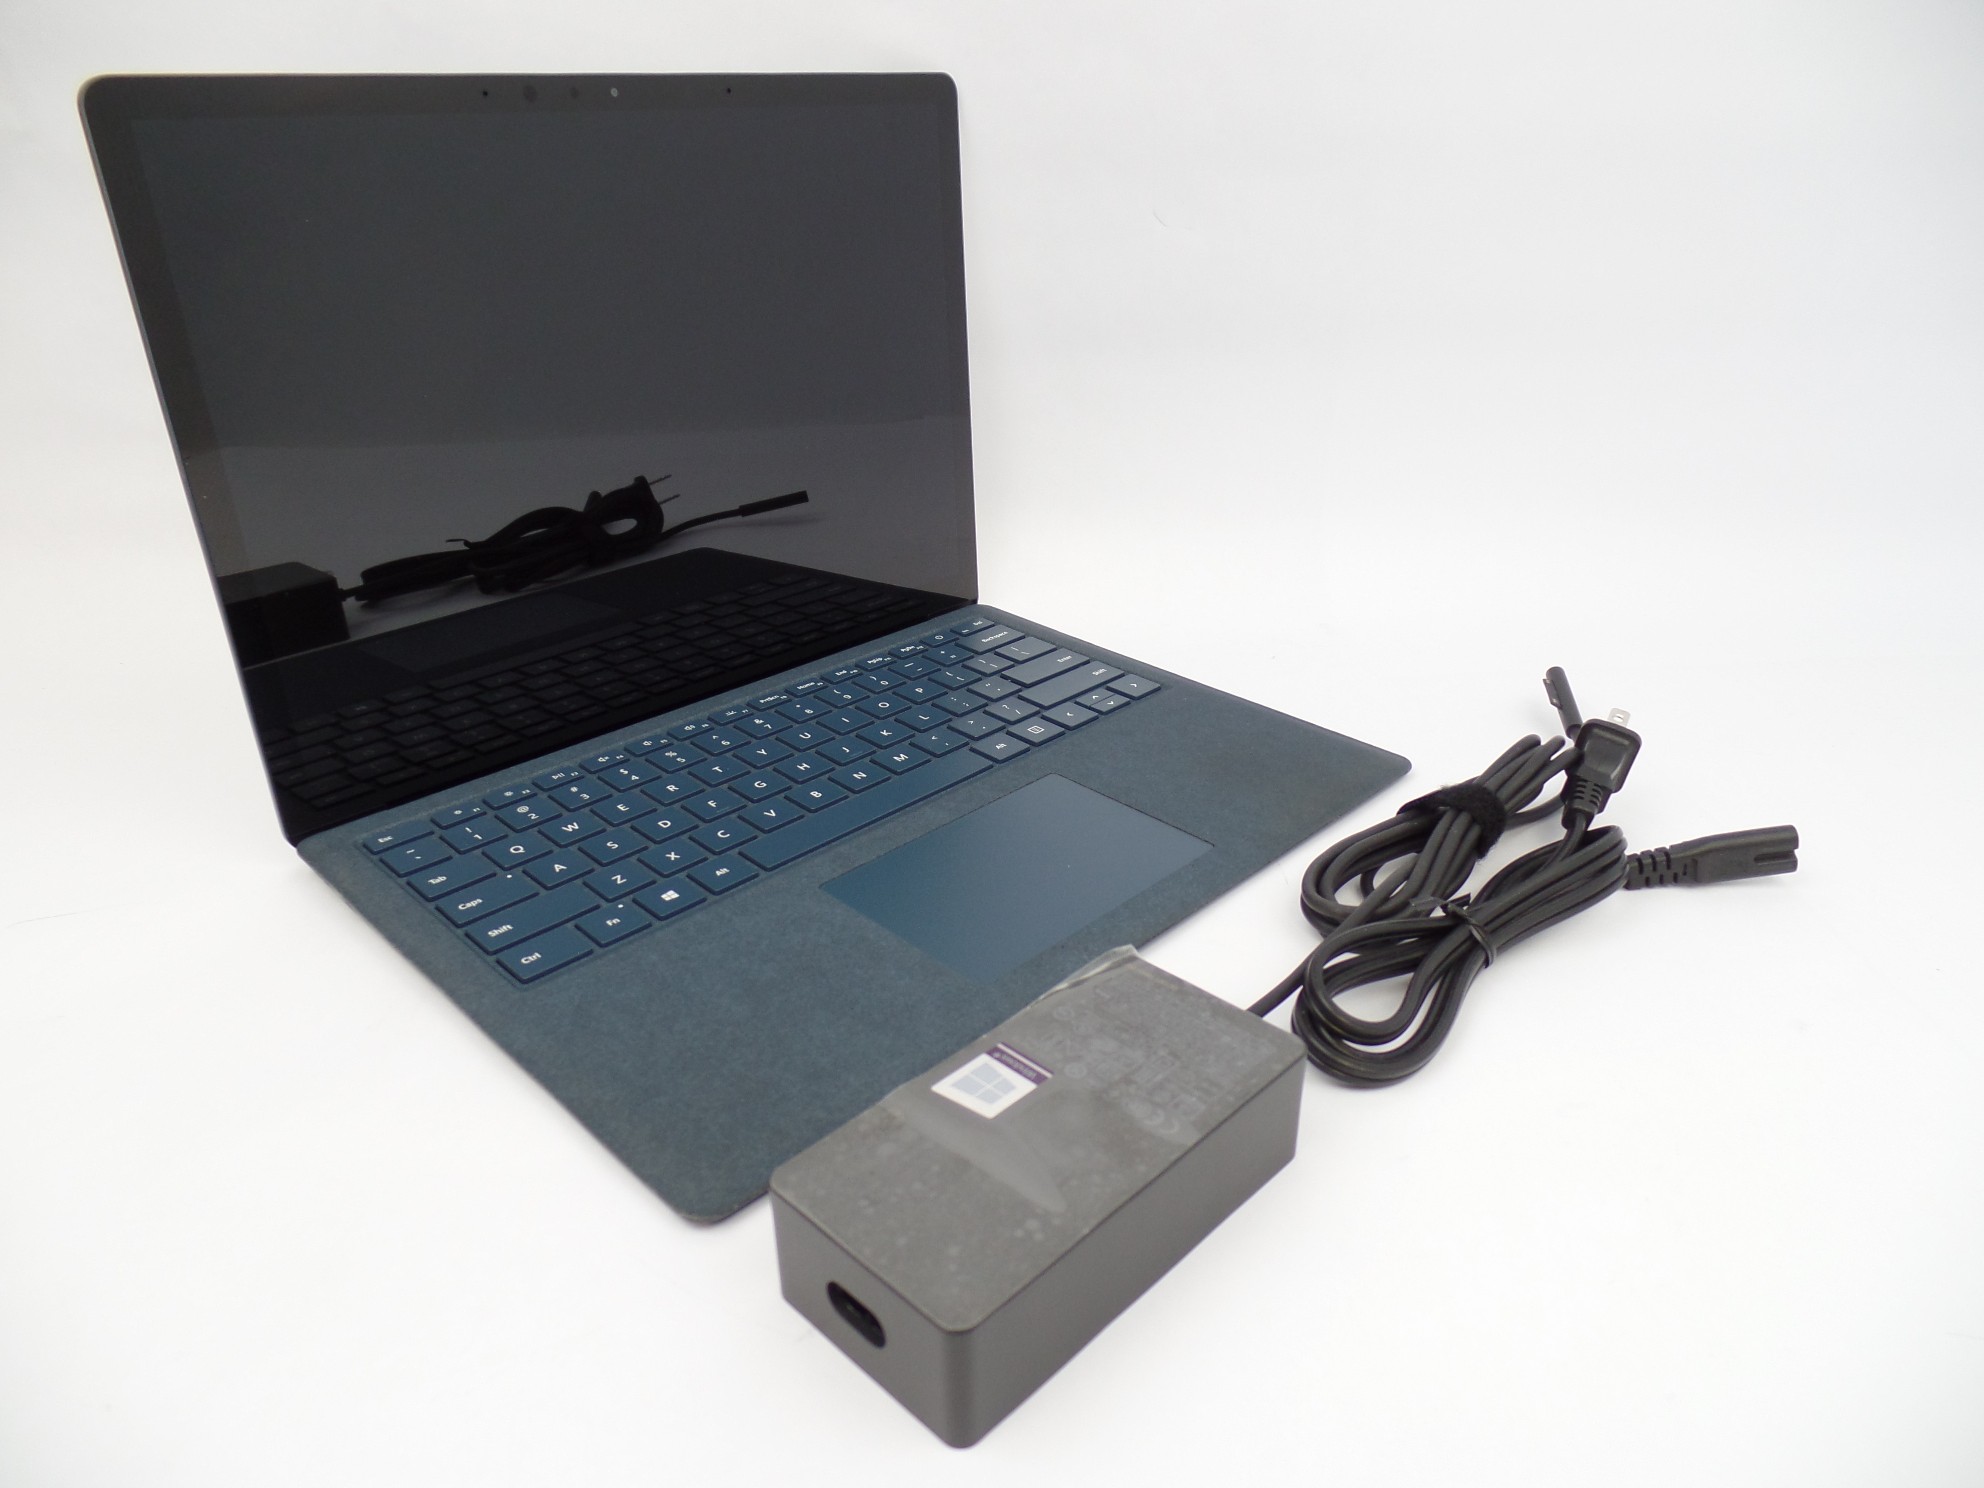 Microsoft Surface Laptop 1769 13.5" Touch i5-7200U 2.7GH 8GB 256GB W10P Blue U